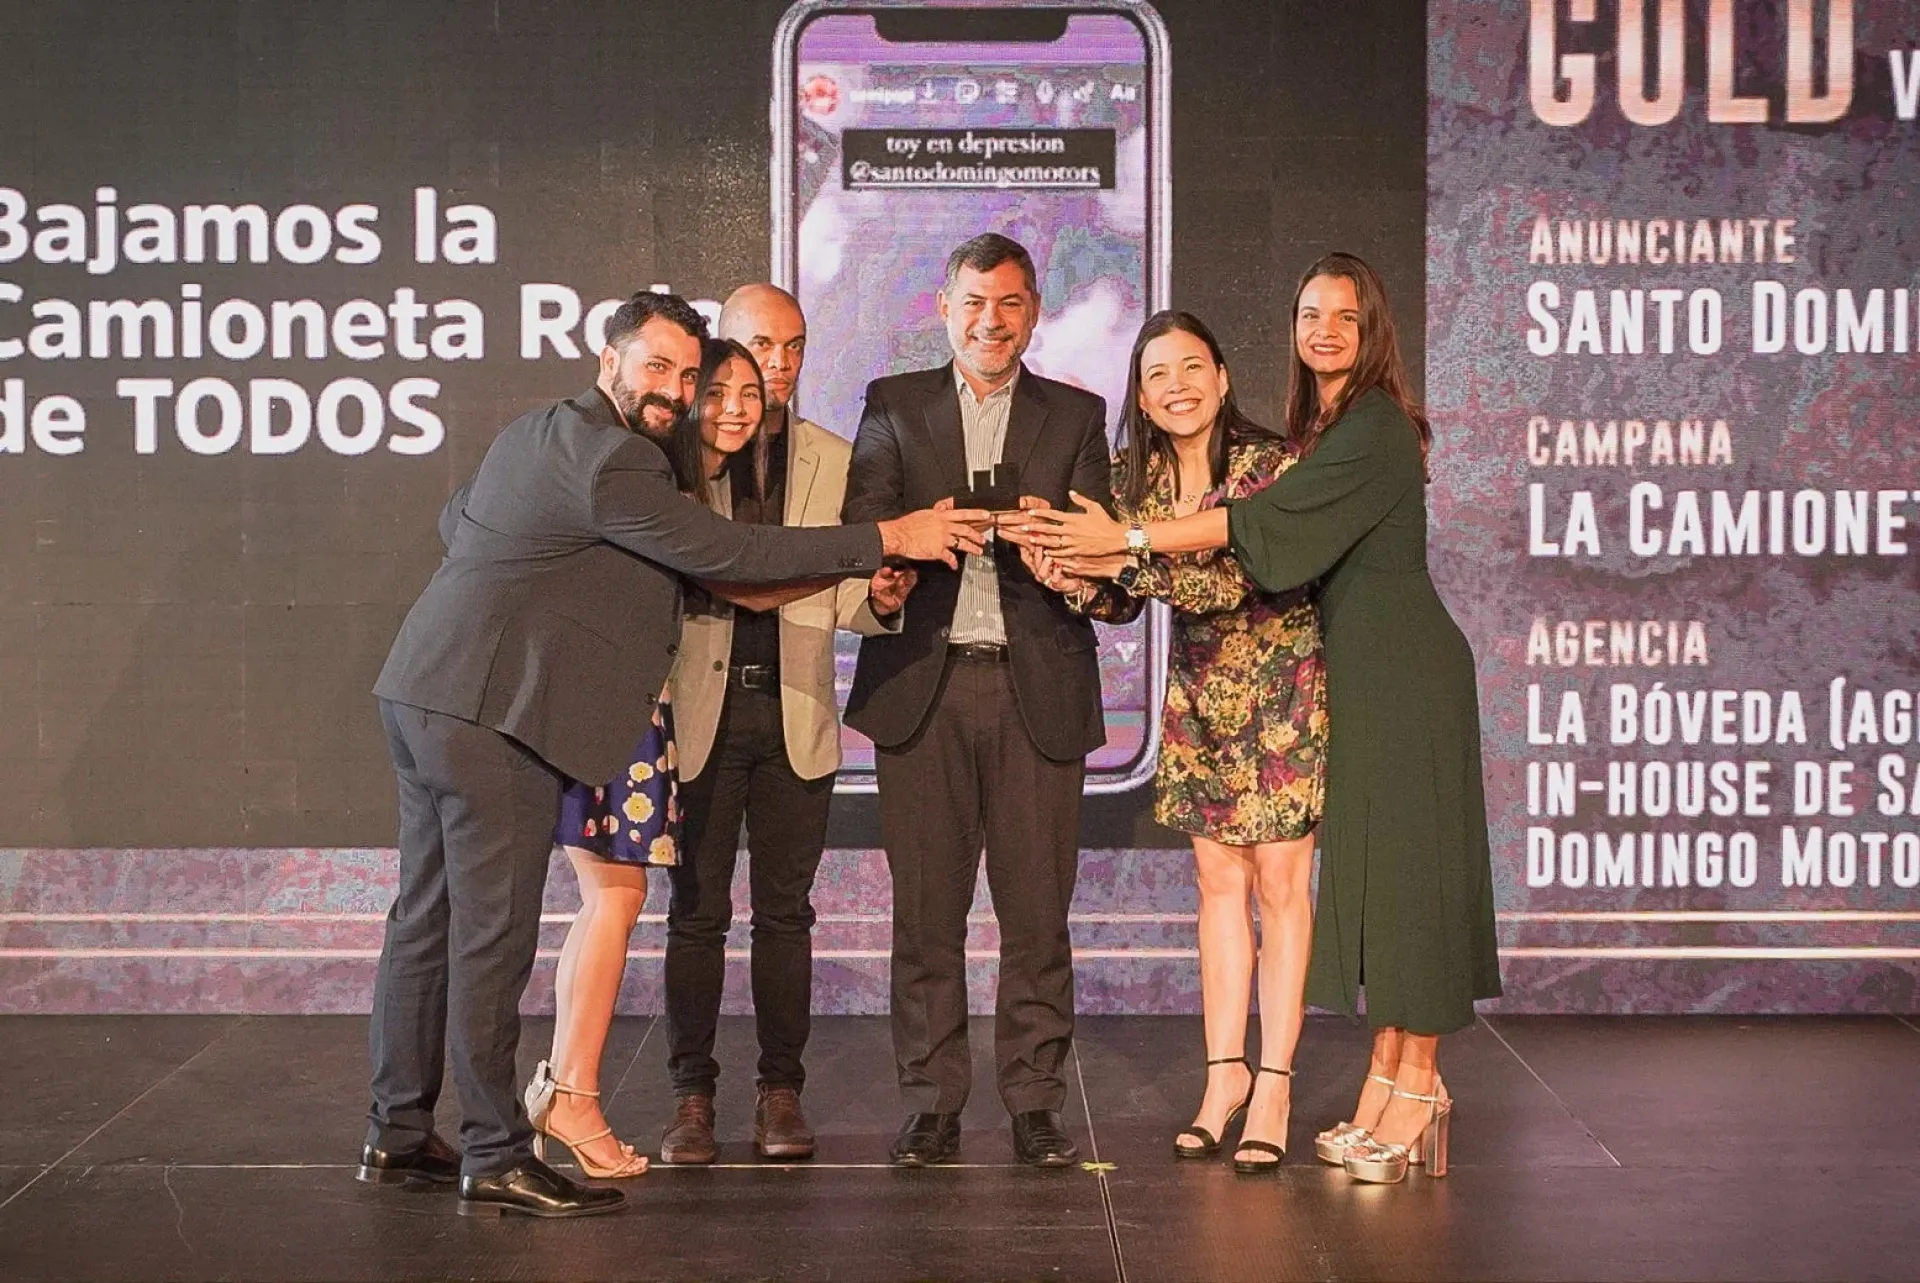 “Campaign La Camioneta Roja de Todos” by Santo Domingo Motors wins Effie Award